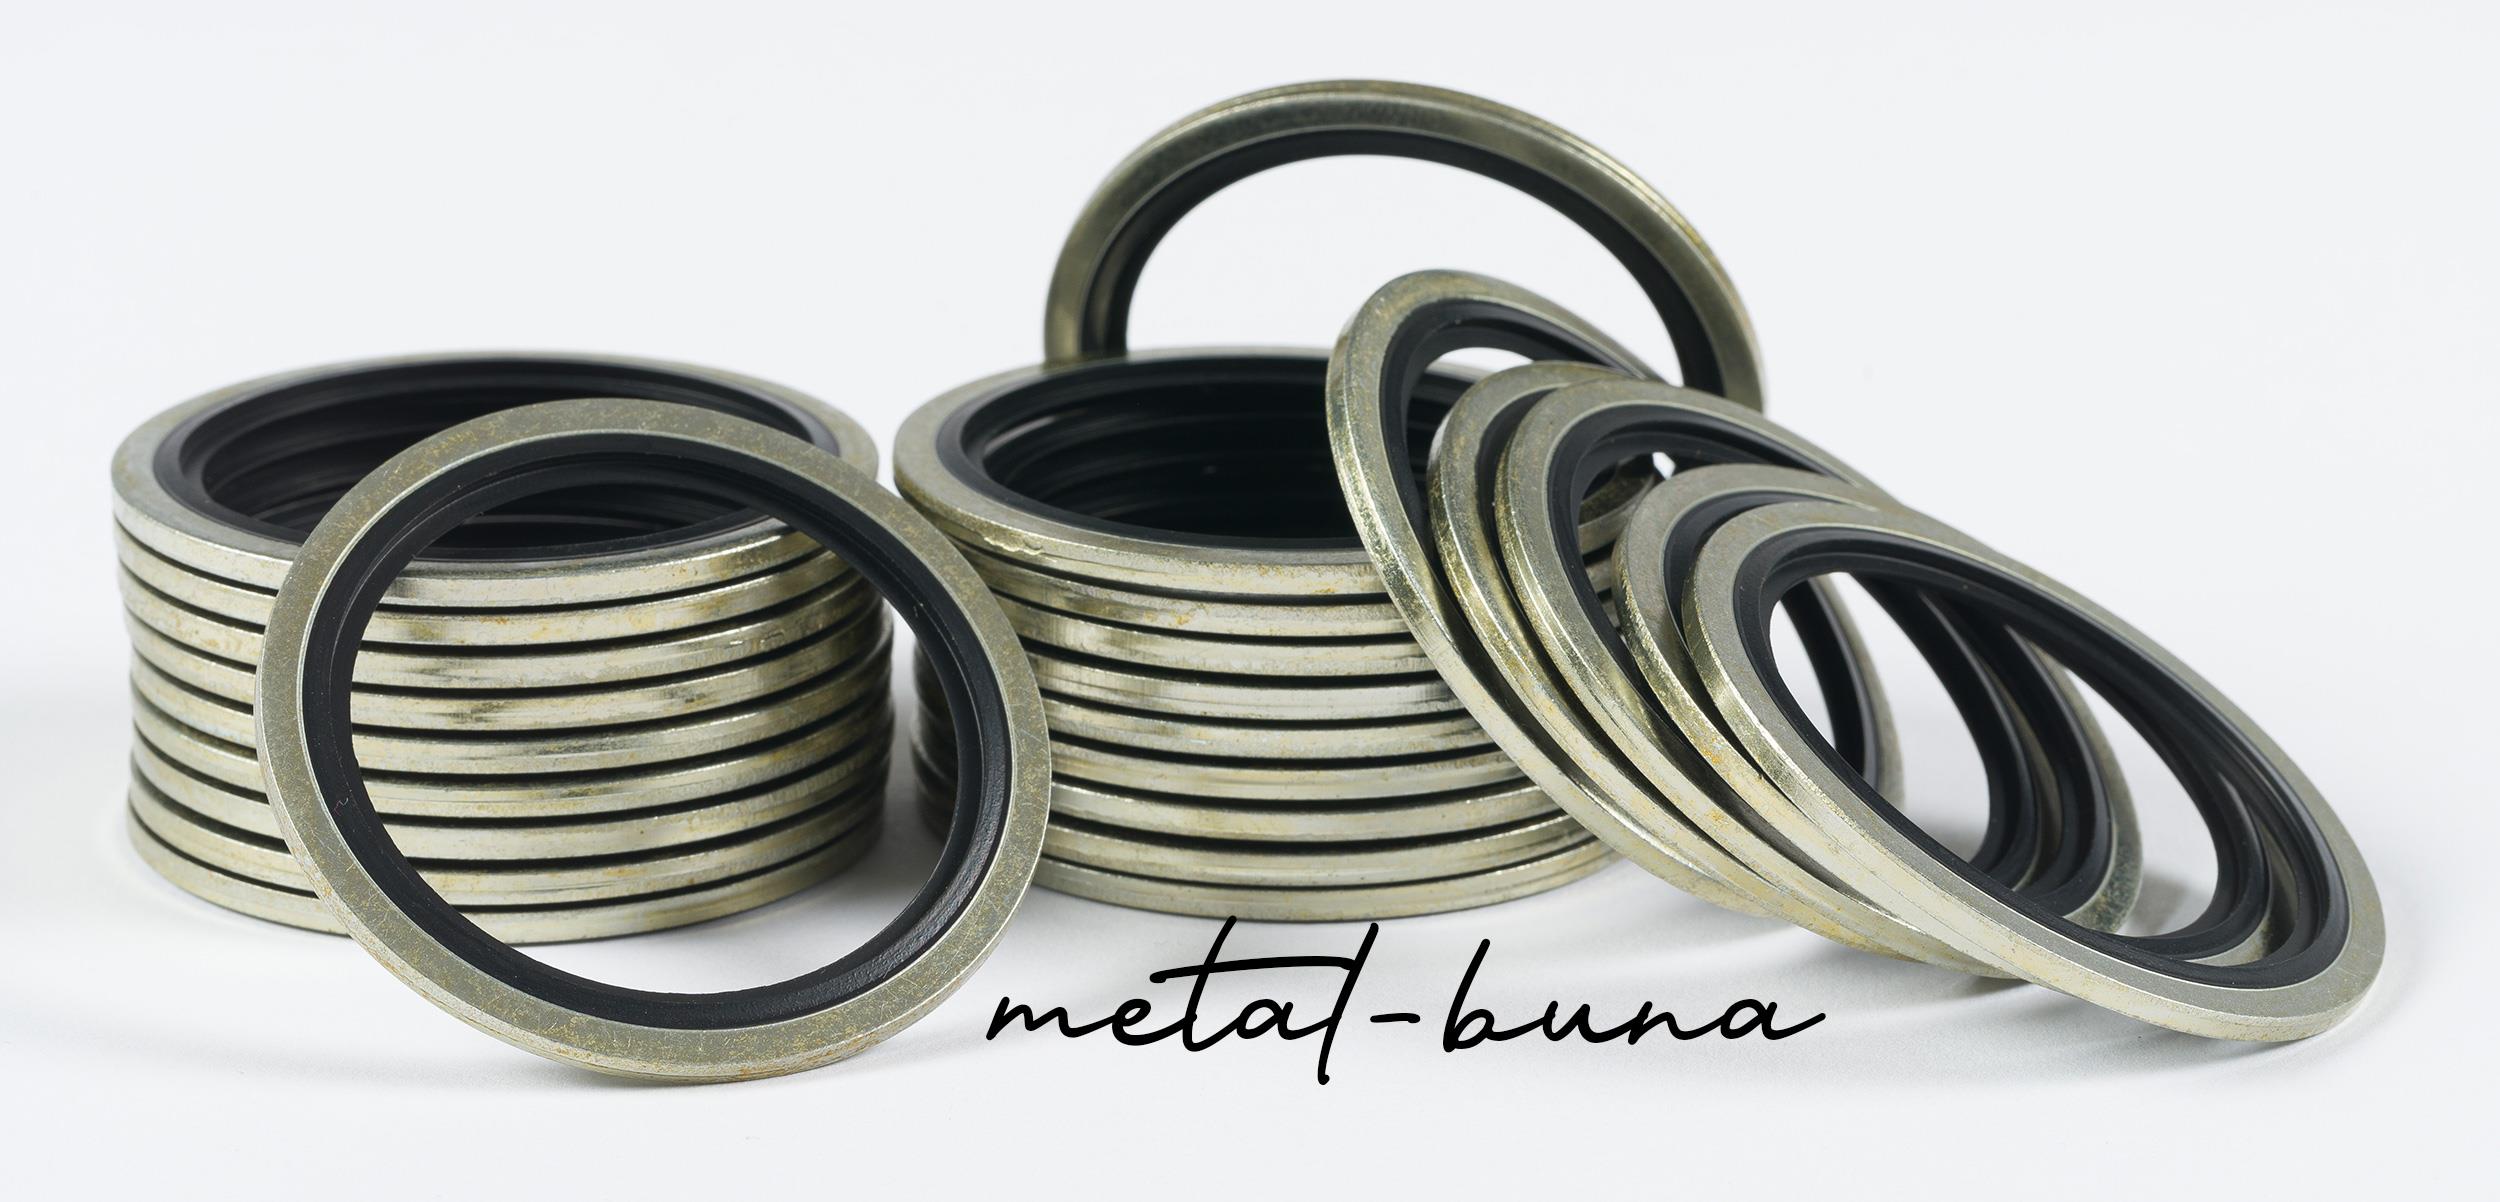 ¿Qué son las metal-buna?